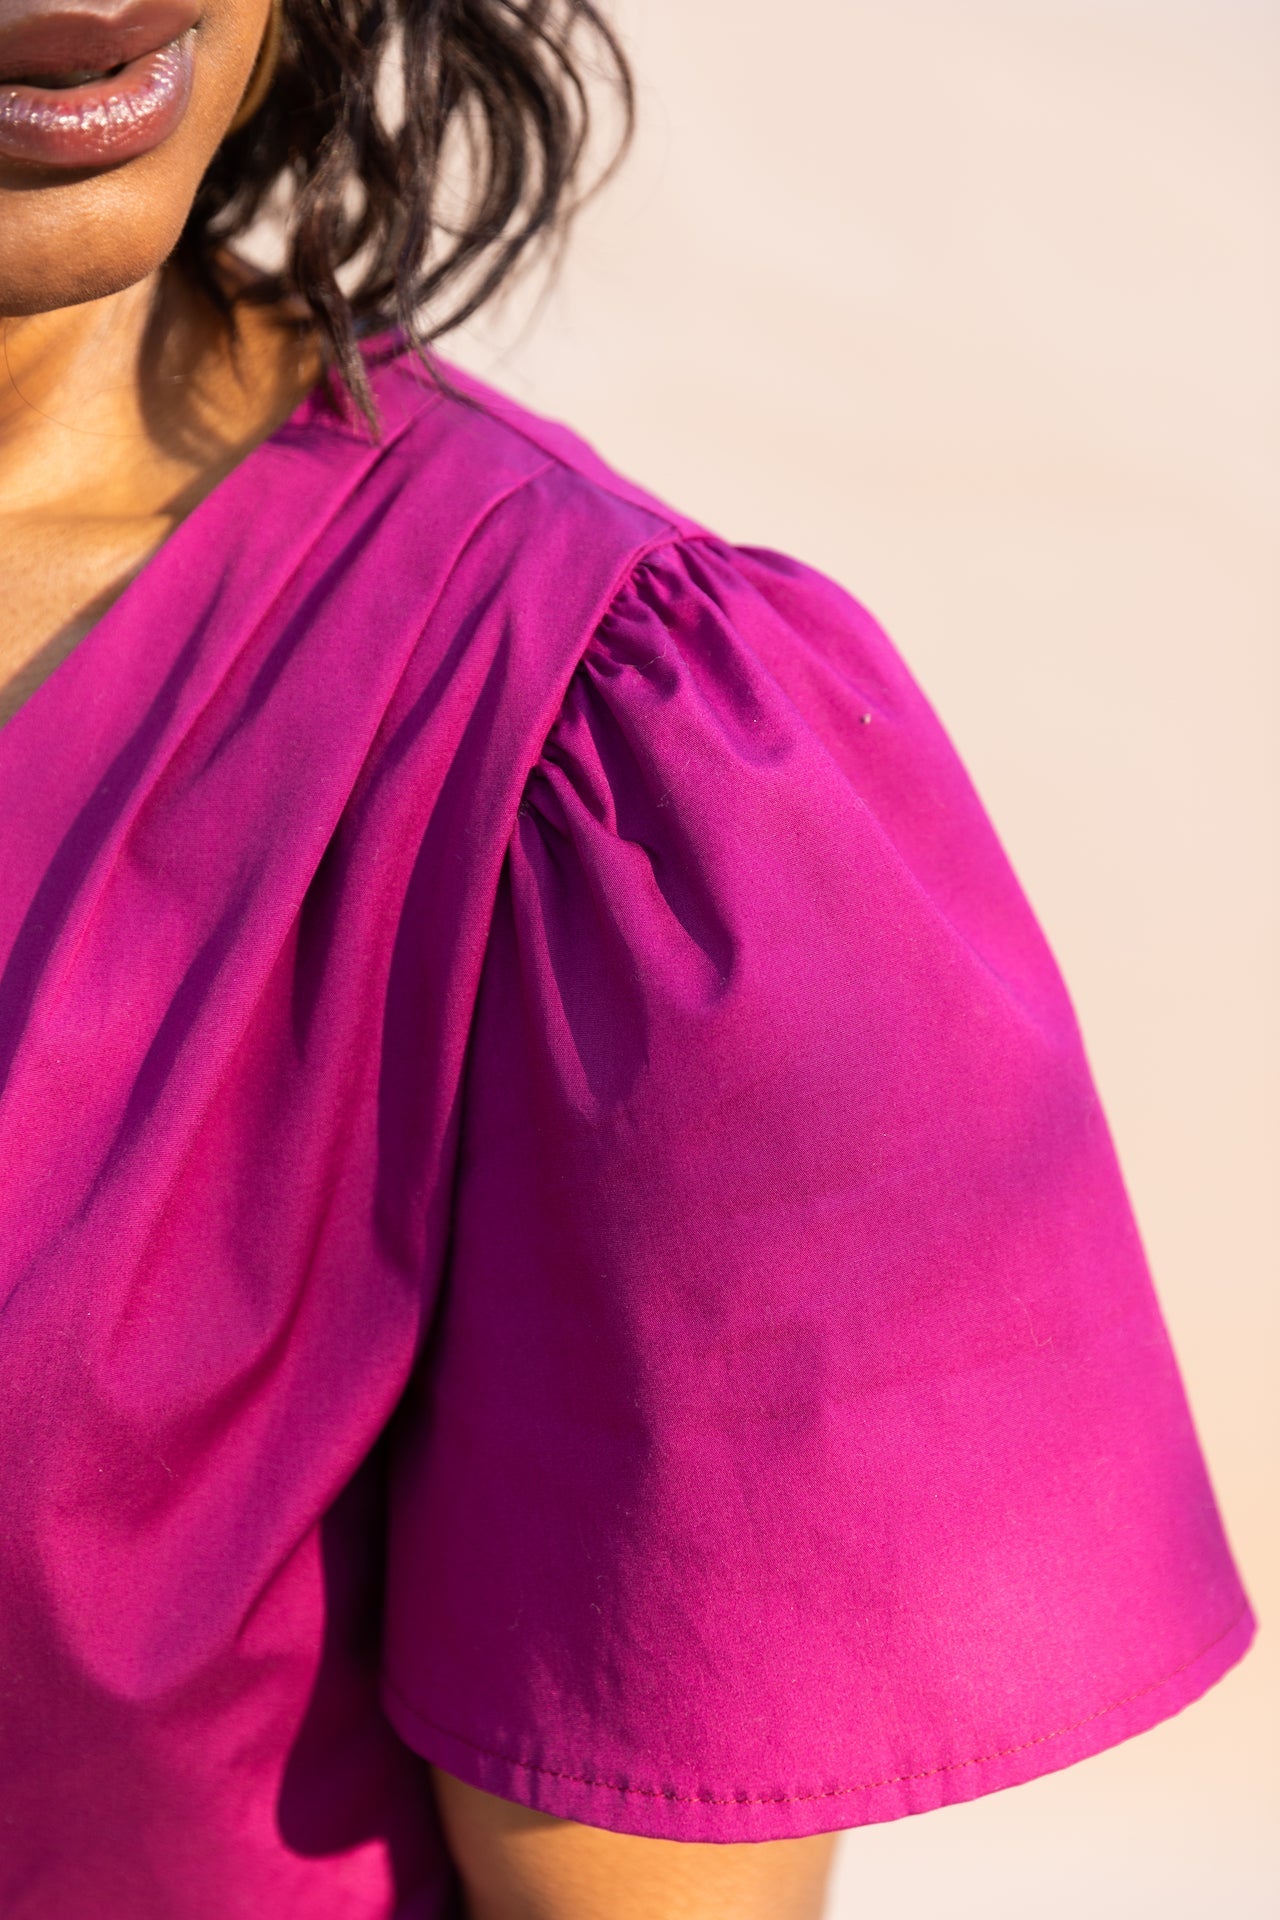 Robe / Top PENELOPE patron de couture pochette - MAISON FAUVE Patron de couture MAISON FAUVE | Gaspard et Léonie Tissus en ligne et Mercerie à Toulouse